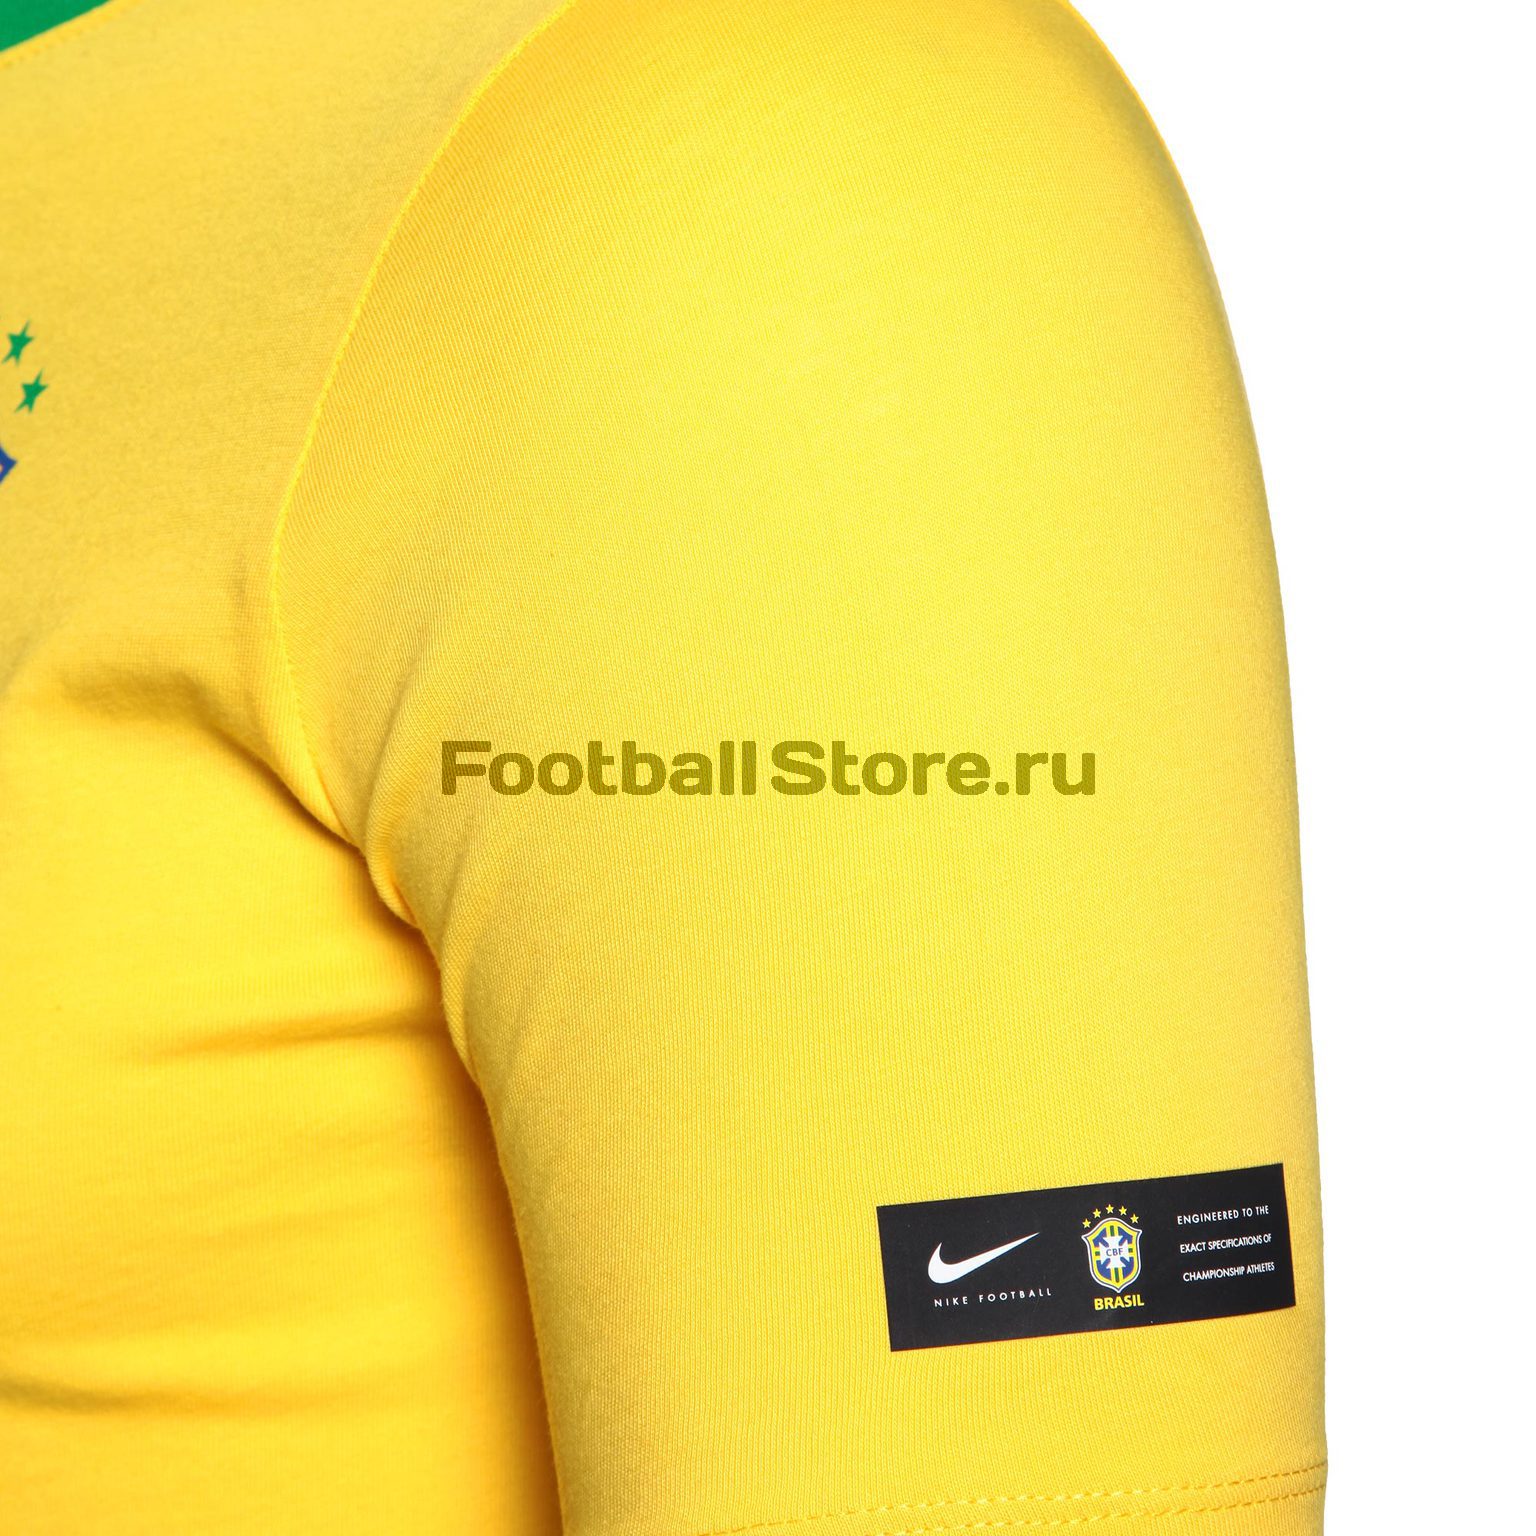 Футболка подростковая Nike сборной Бразилии 888989-749